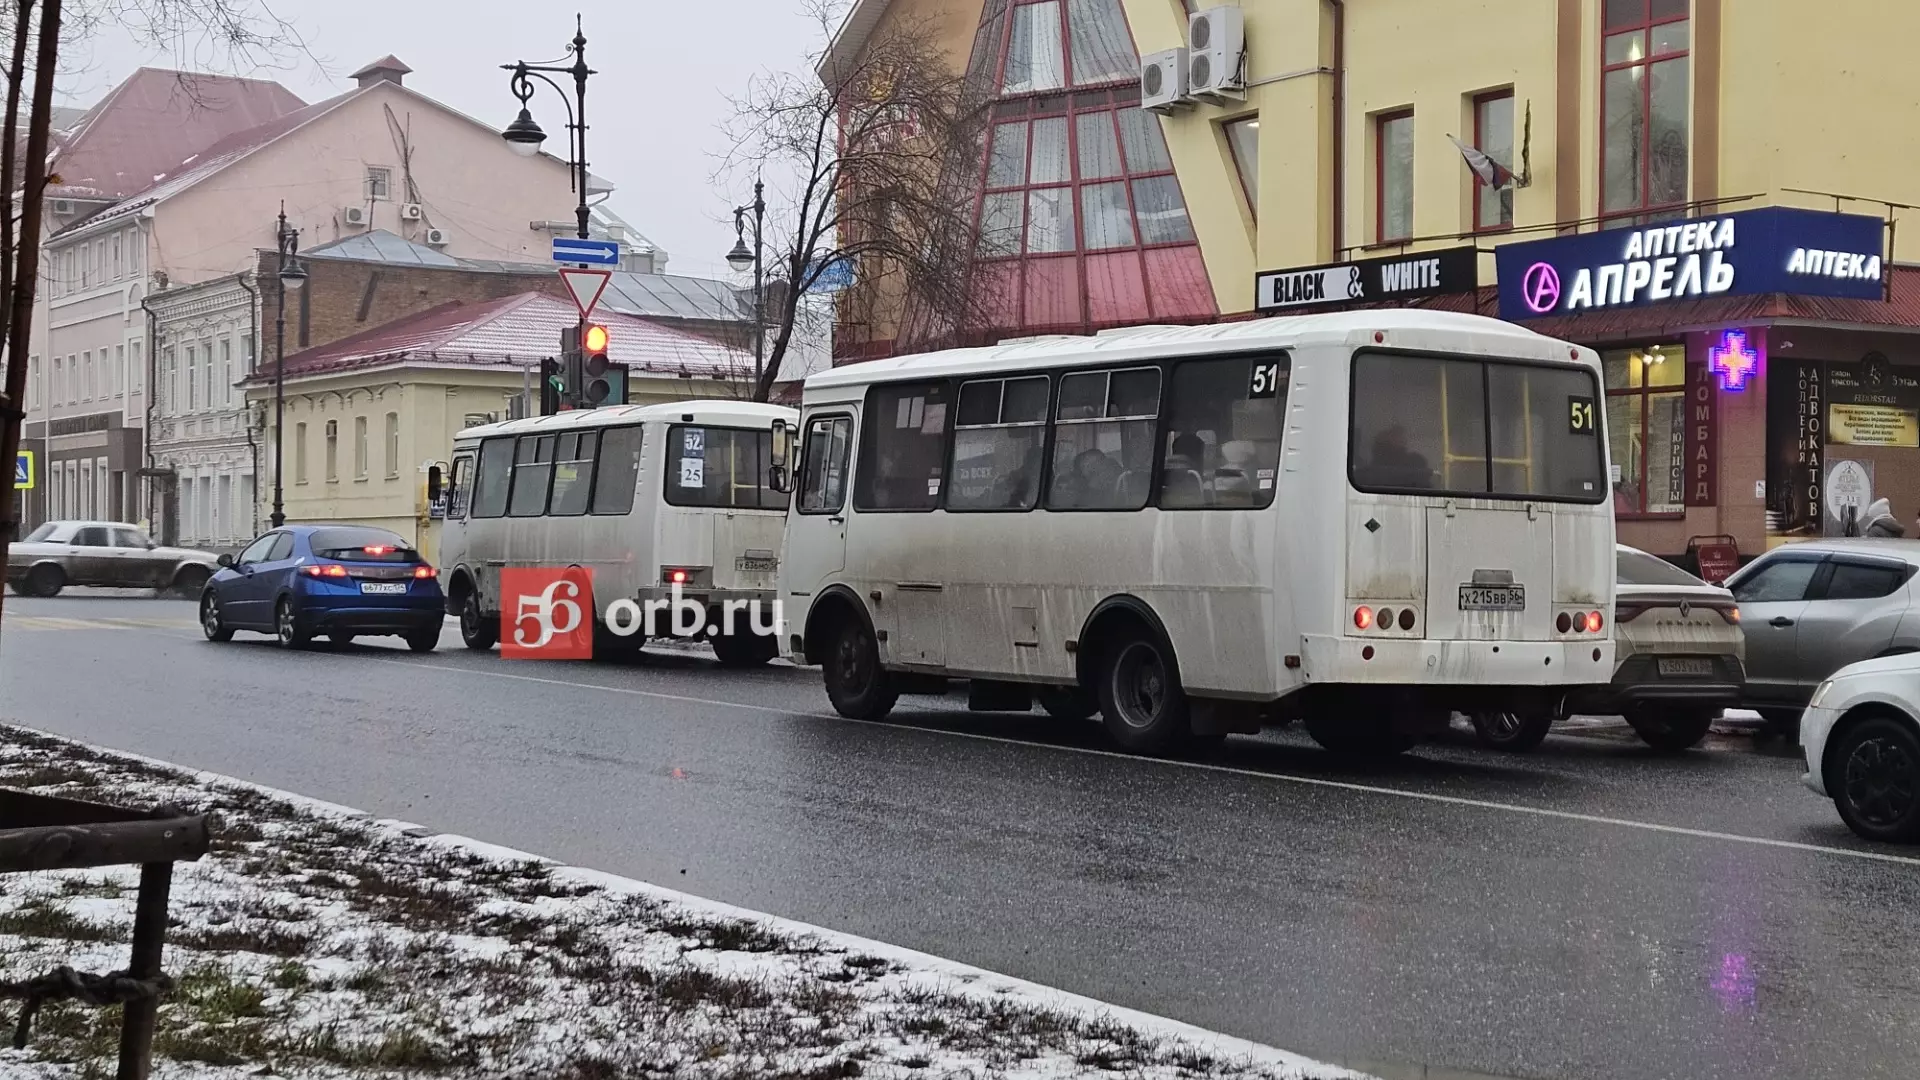 Автобусы в Оренбурге ходят по новым маршрутам друг за другом